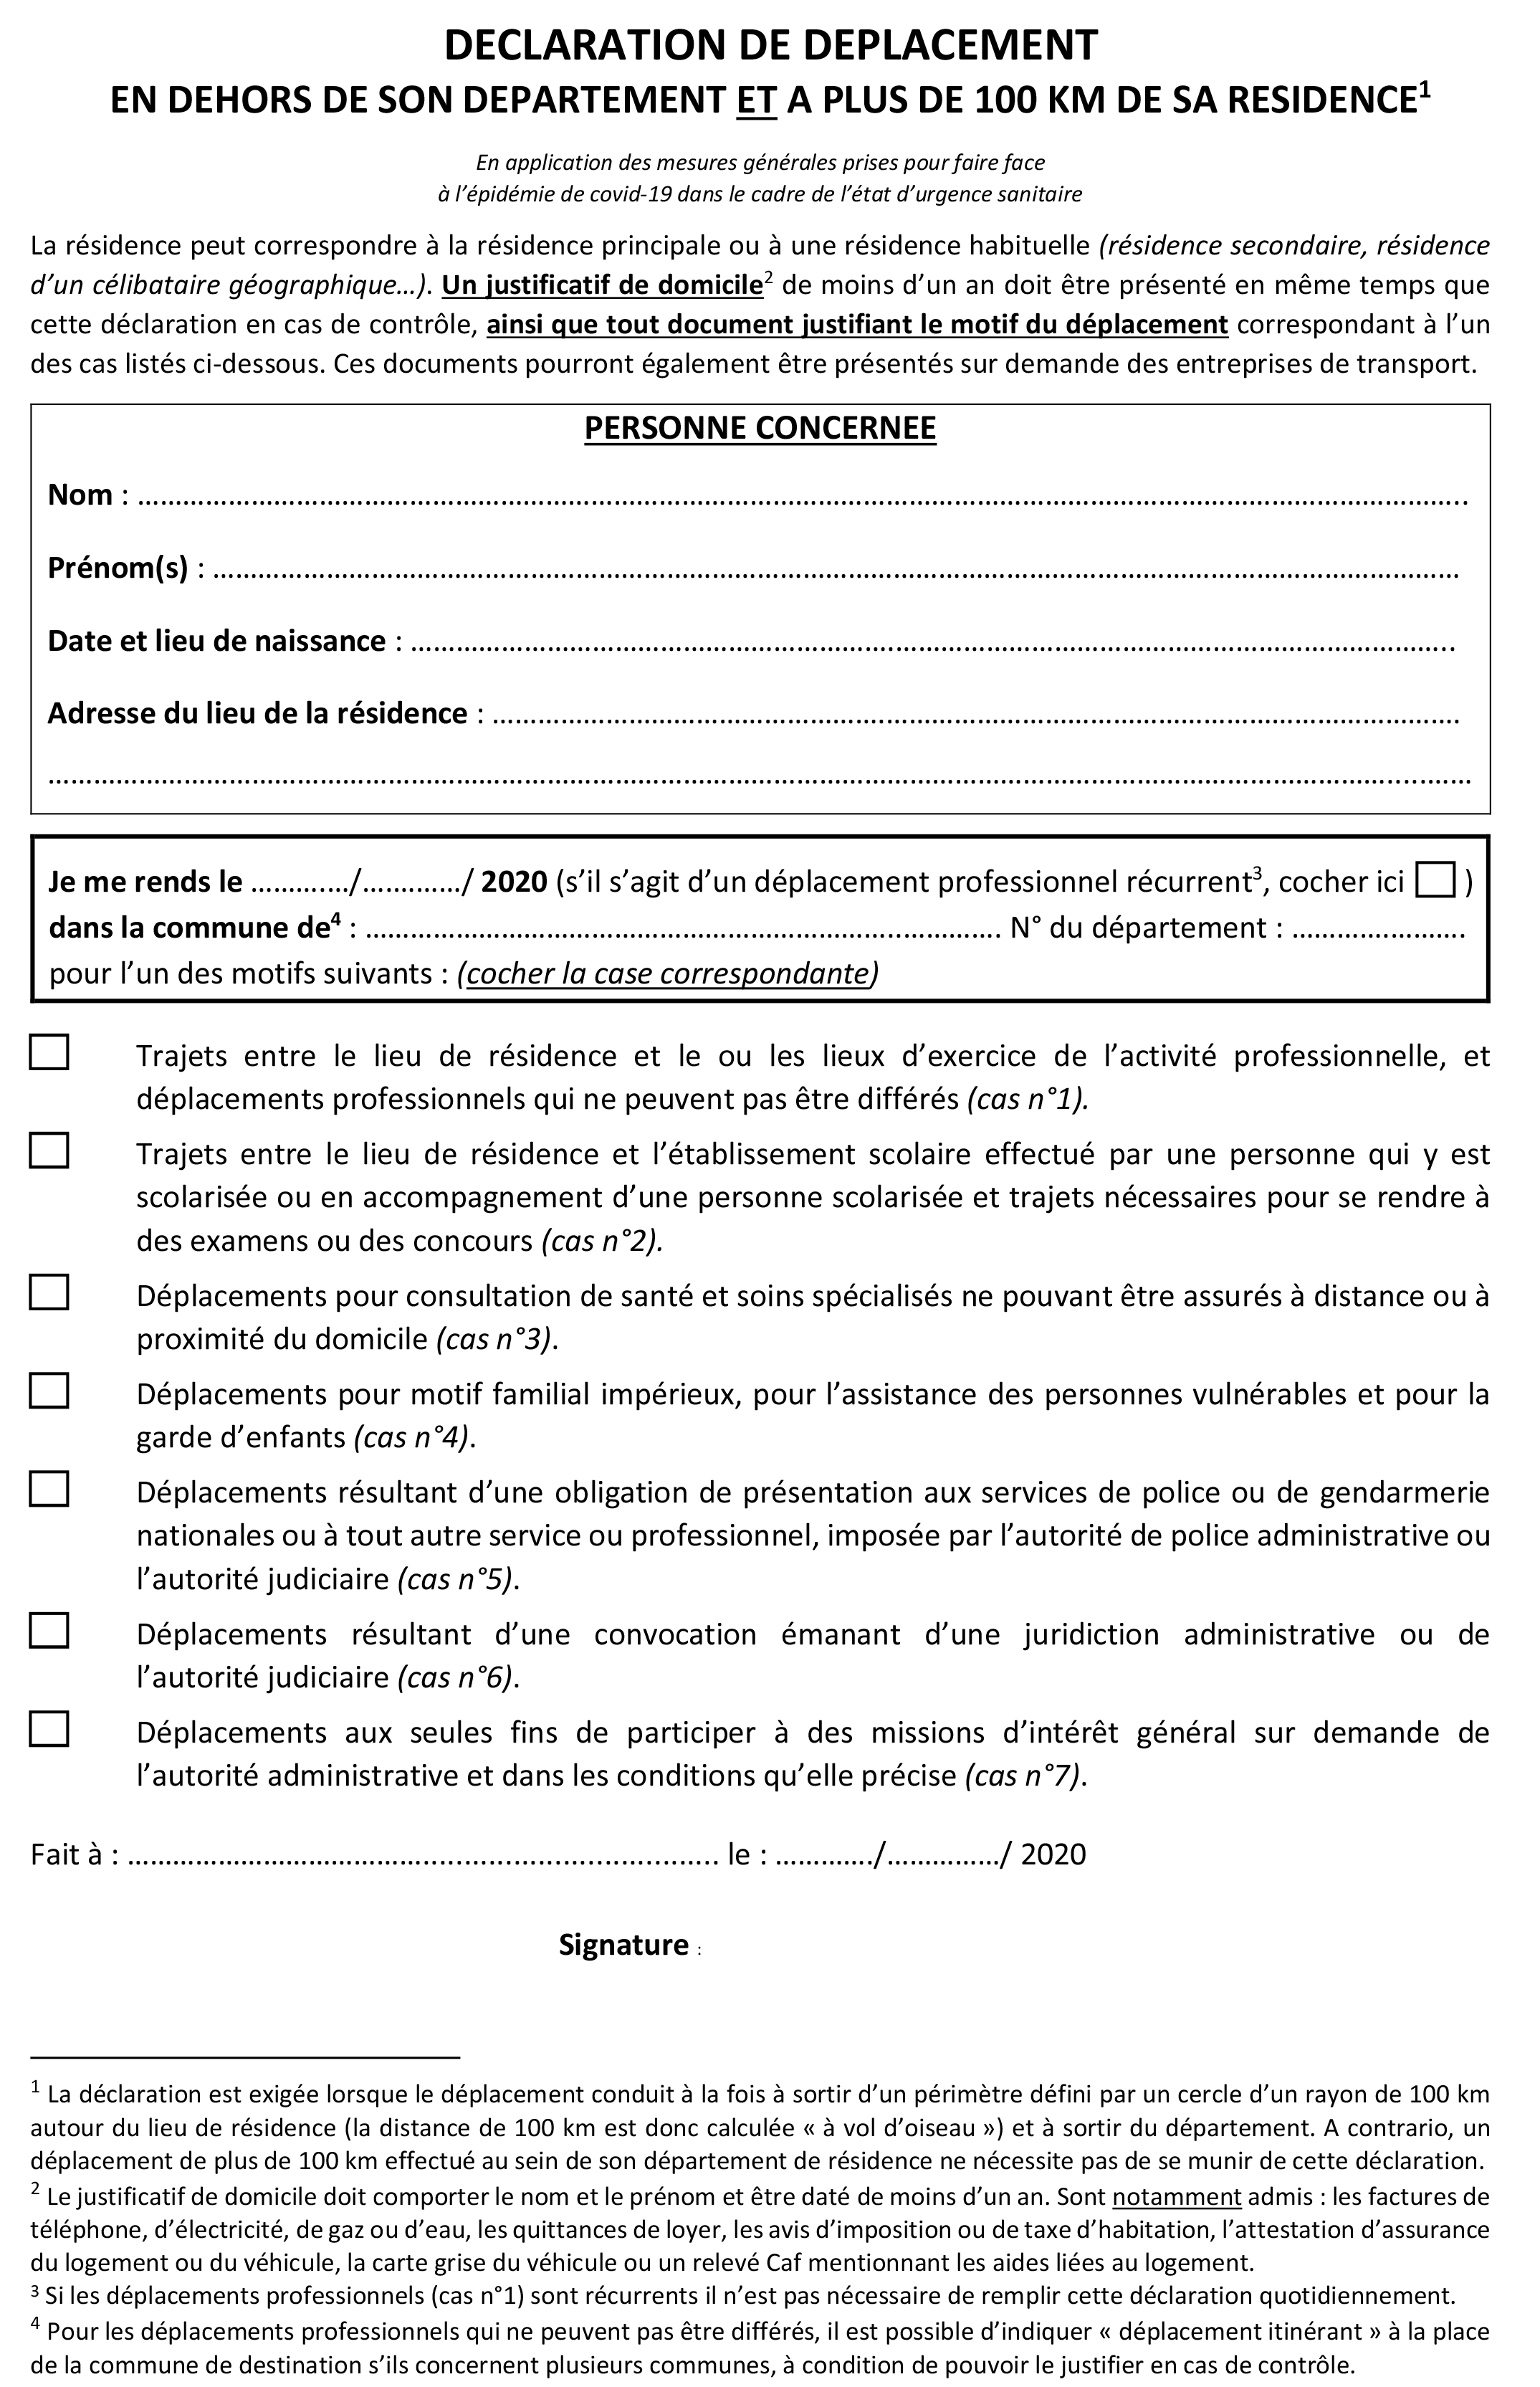 11-05-2020-Declaration-deplacement-FR-pdf.jpg (2.09 MB)